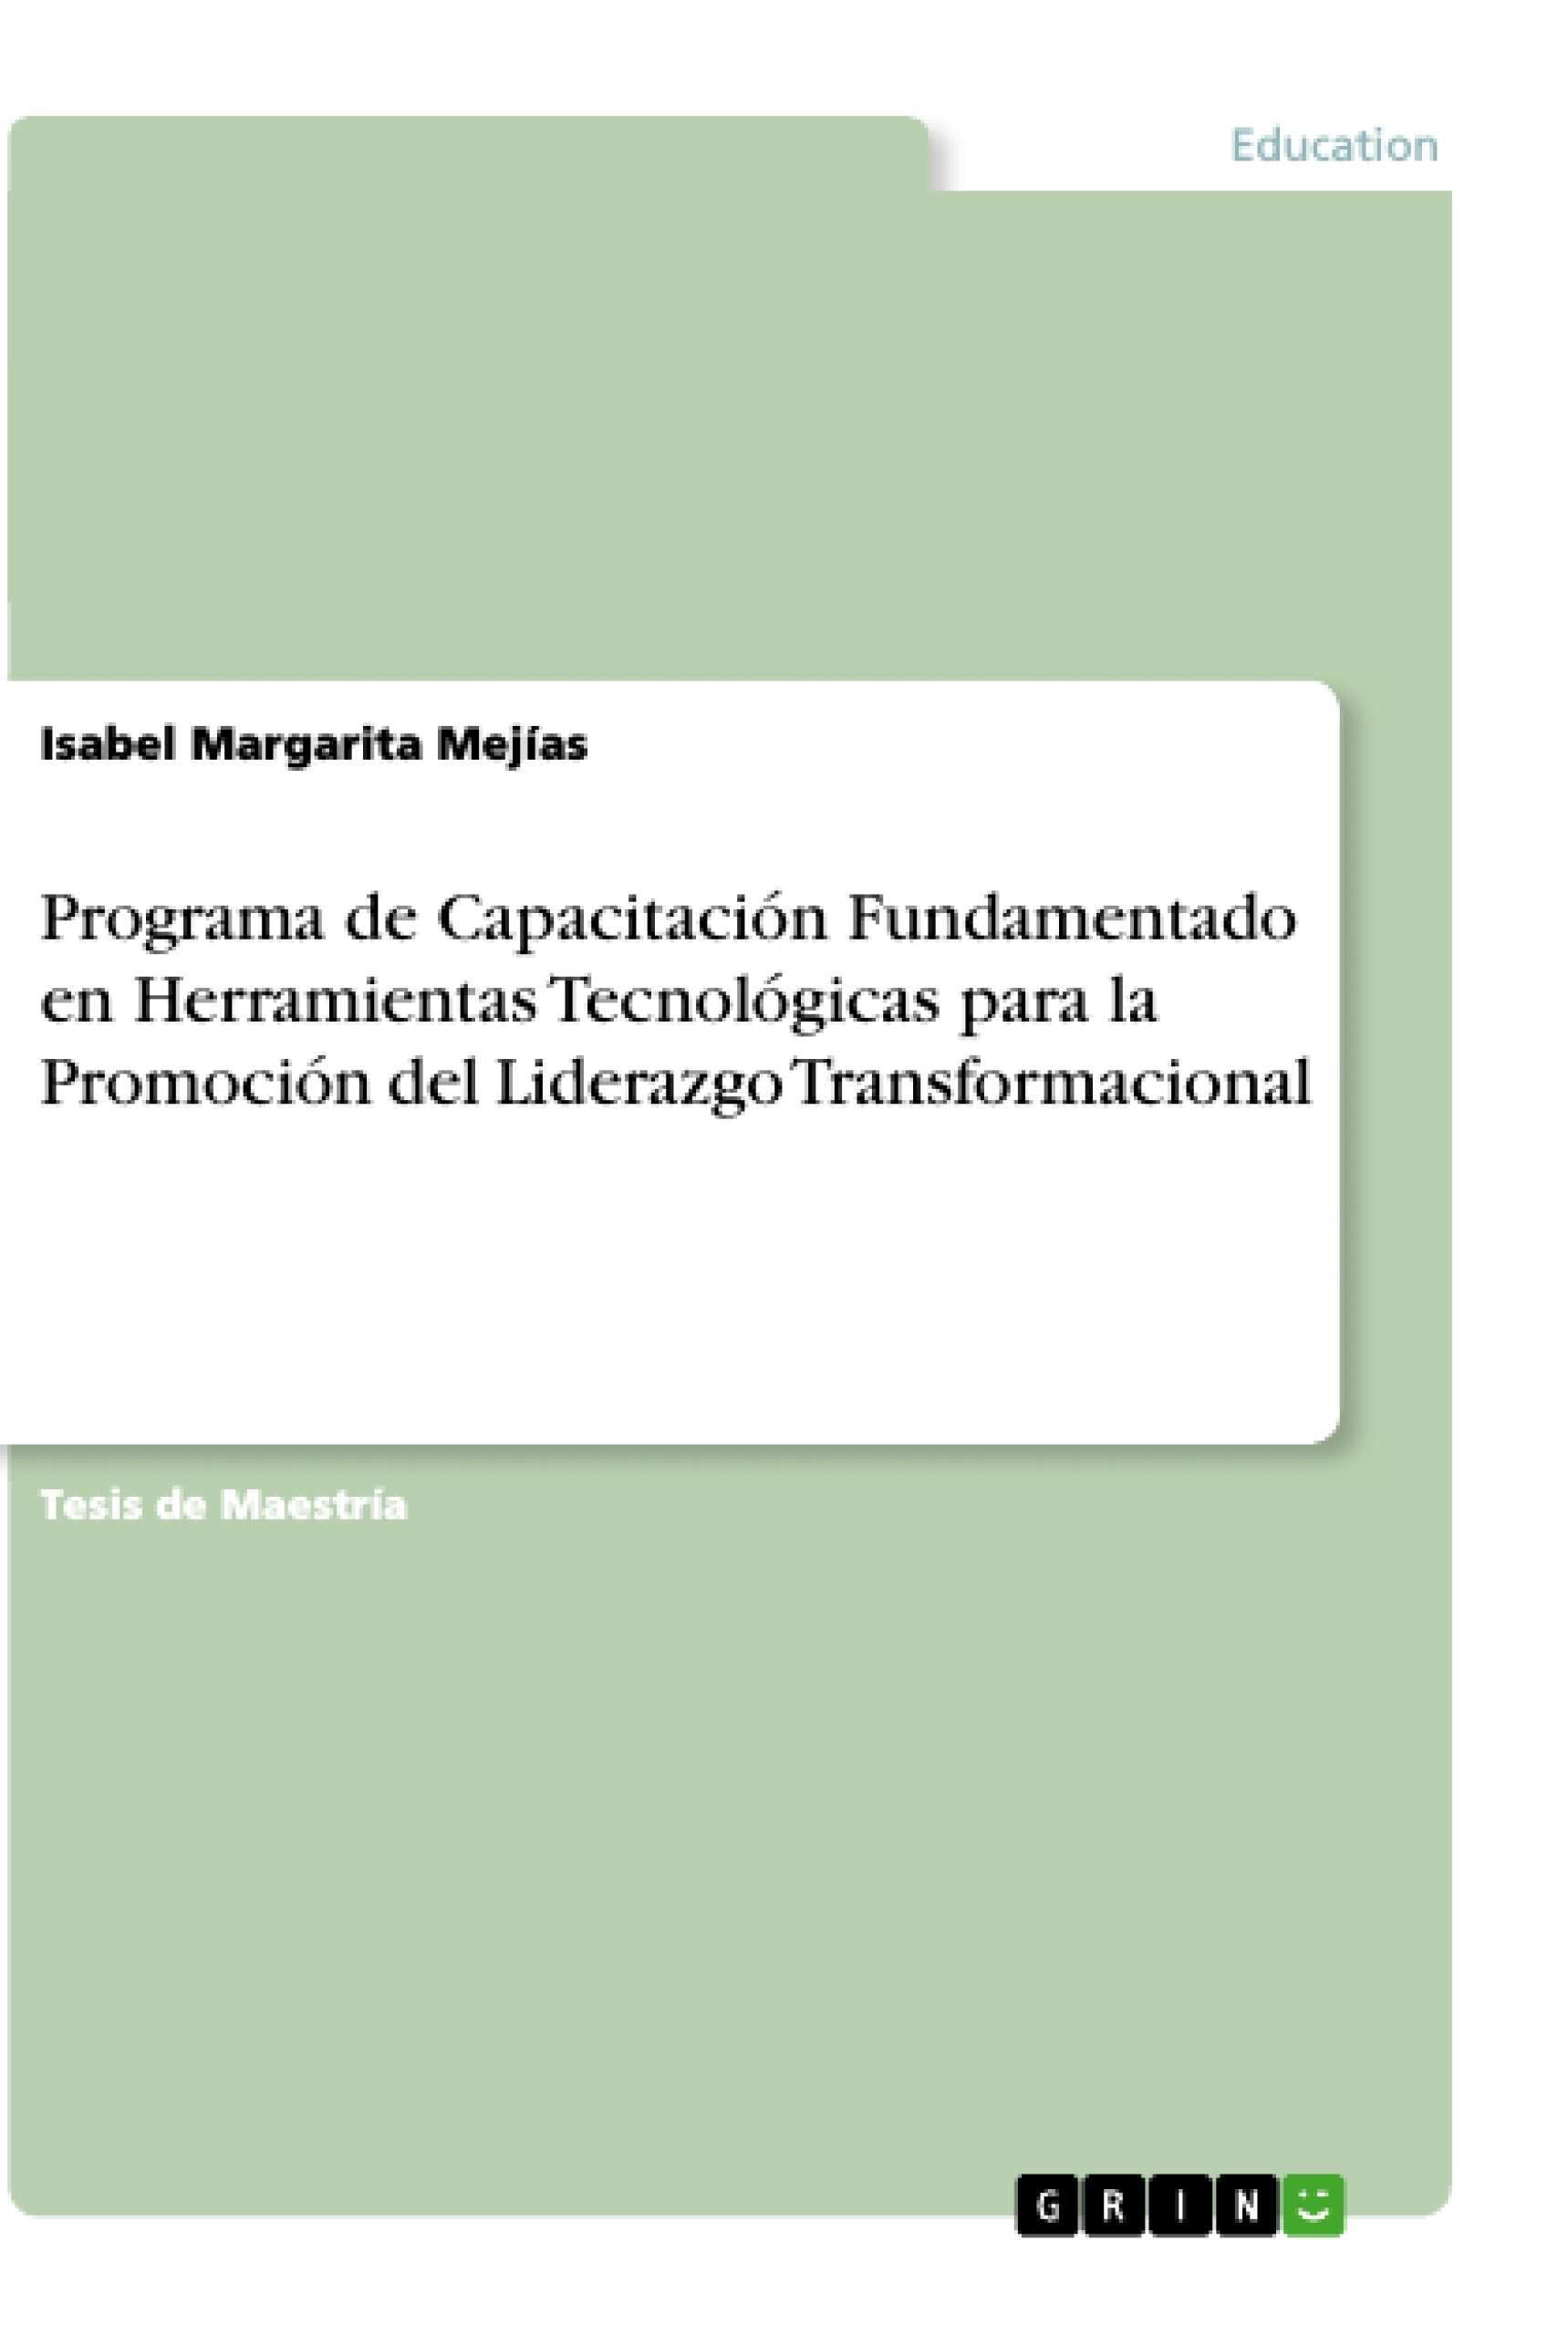 Titel: Programa de Capacitación Fundamentado en Herramientas Tecnológicas para la Promoción del Liderazgo Transformacional